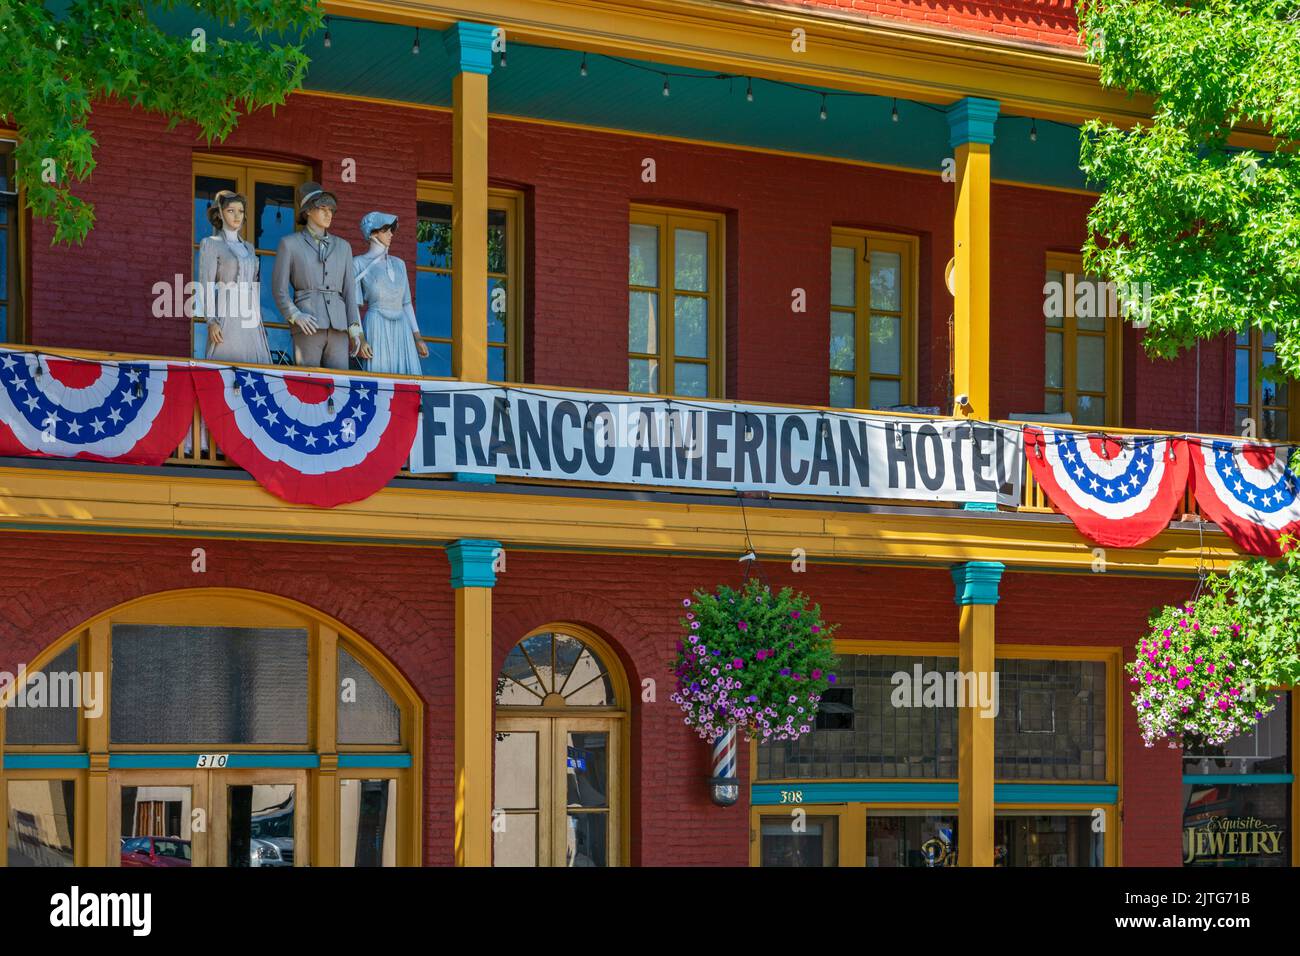 California, Yreka, Old Town, Franco American Hotel, comenzó en 1855, maniquíes en el balcón Foto de stock